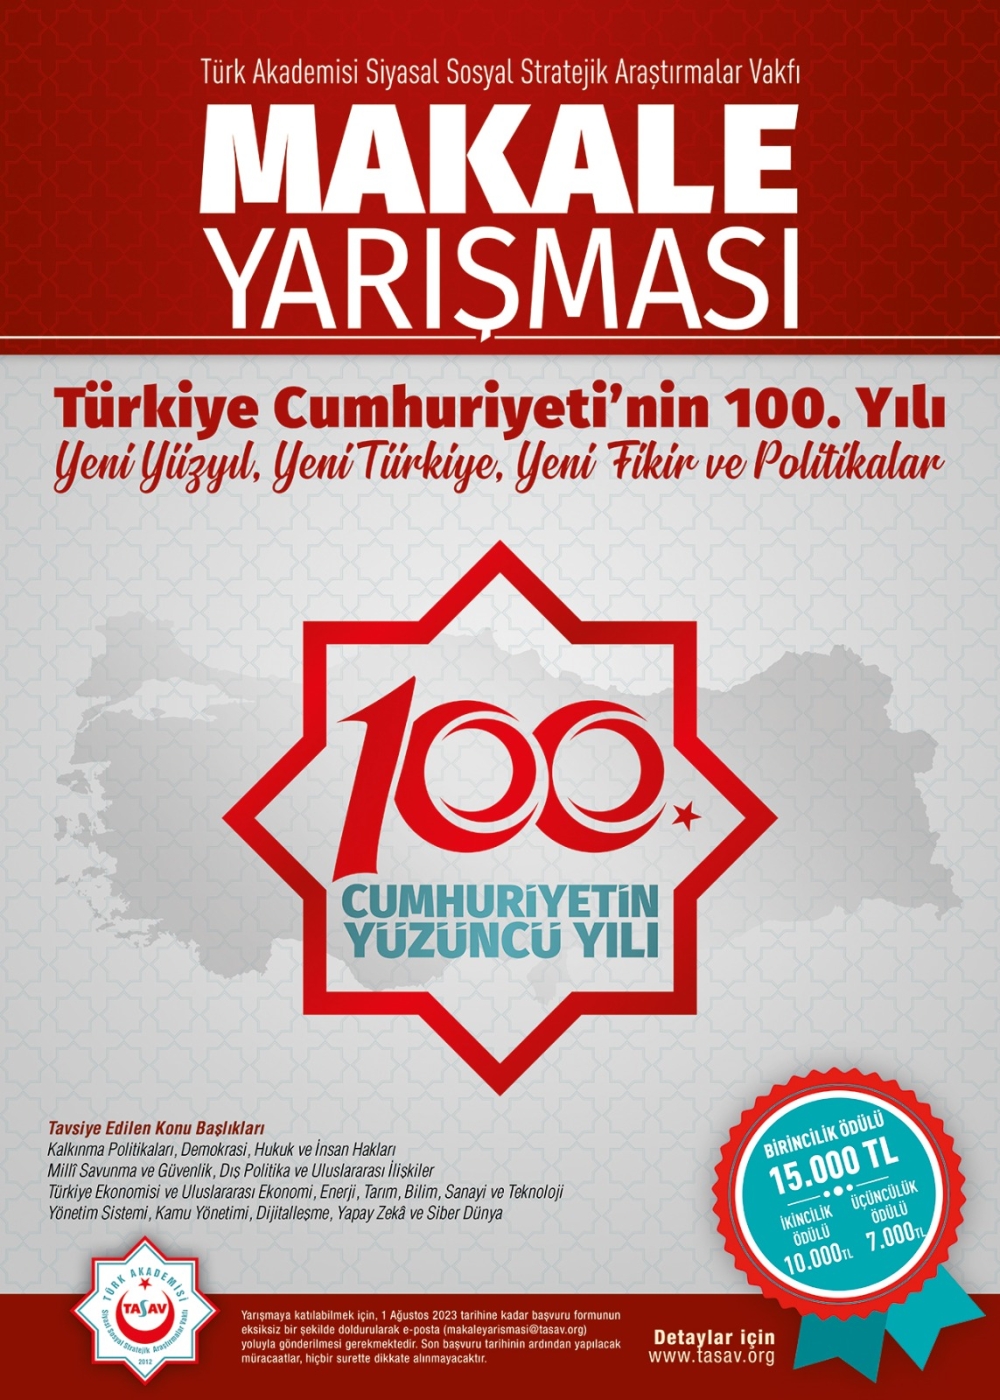 Makale Yarışması: “Türkiye Cumhuriyeti’nin 100. Yılı: Yeni Yüzyıl, Yeni Türkiye, Yeni Fikir ve Politikalar”